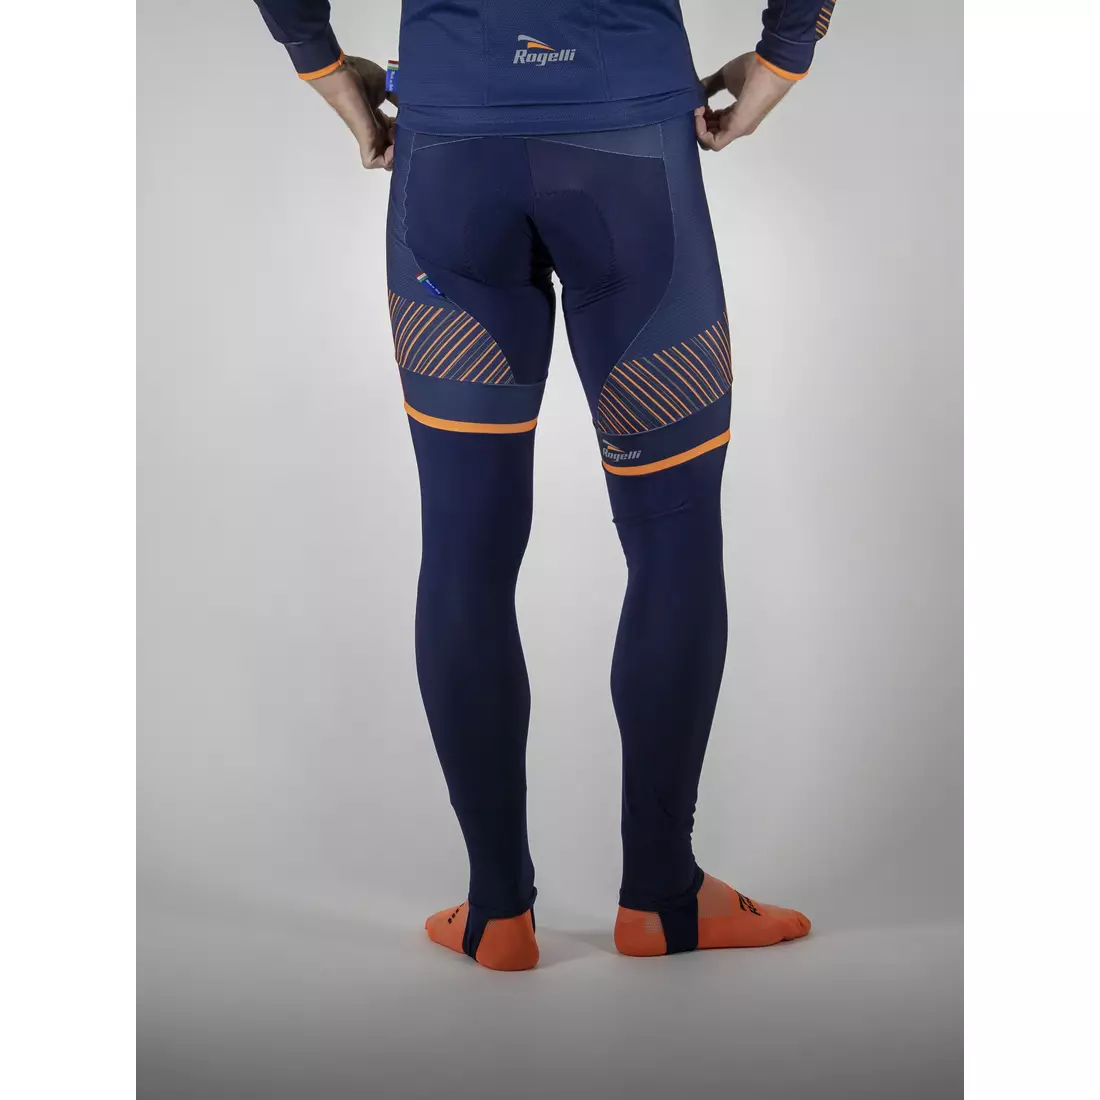 Zateplené cyklistické kalhoty ROGELLI RITMO, tmavě modrá-fluo oranžová